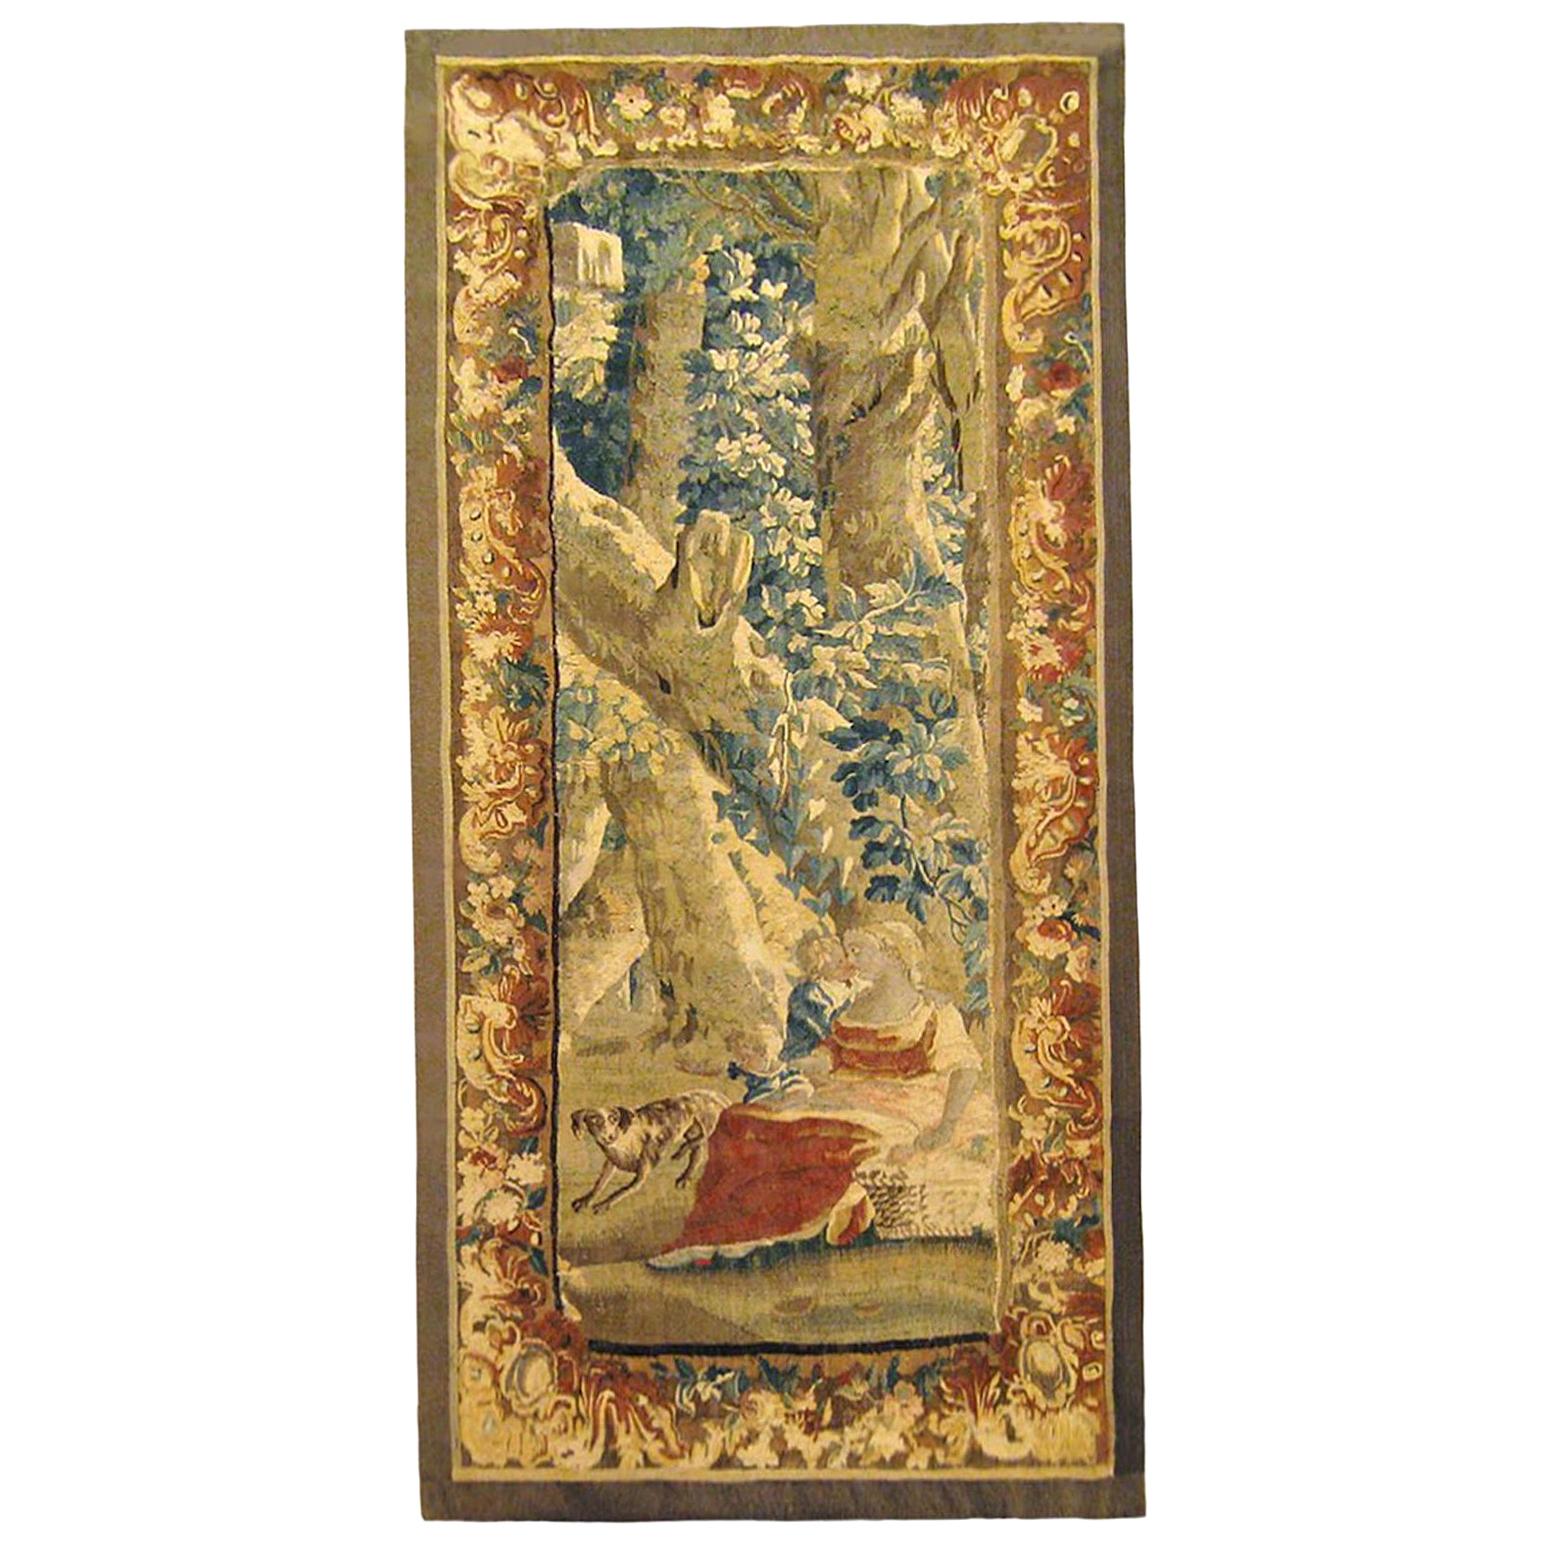 Panneau de tapisserie rustique flamand du 18ème siècle